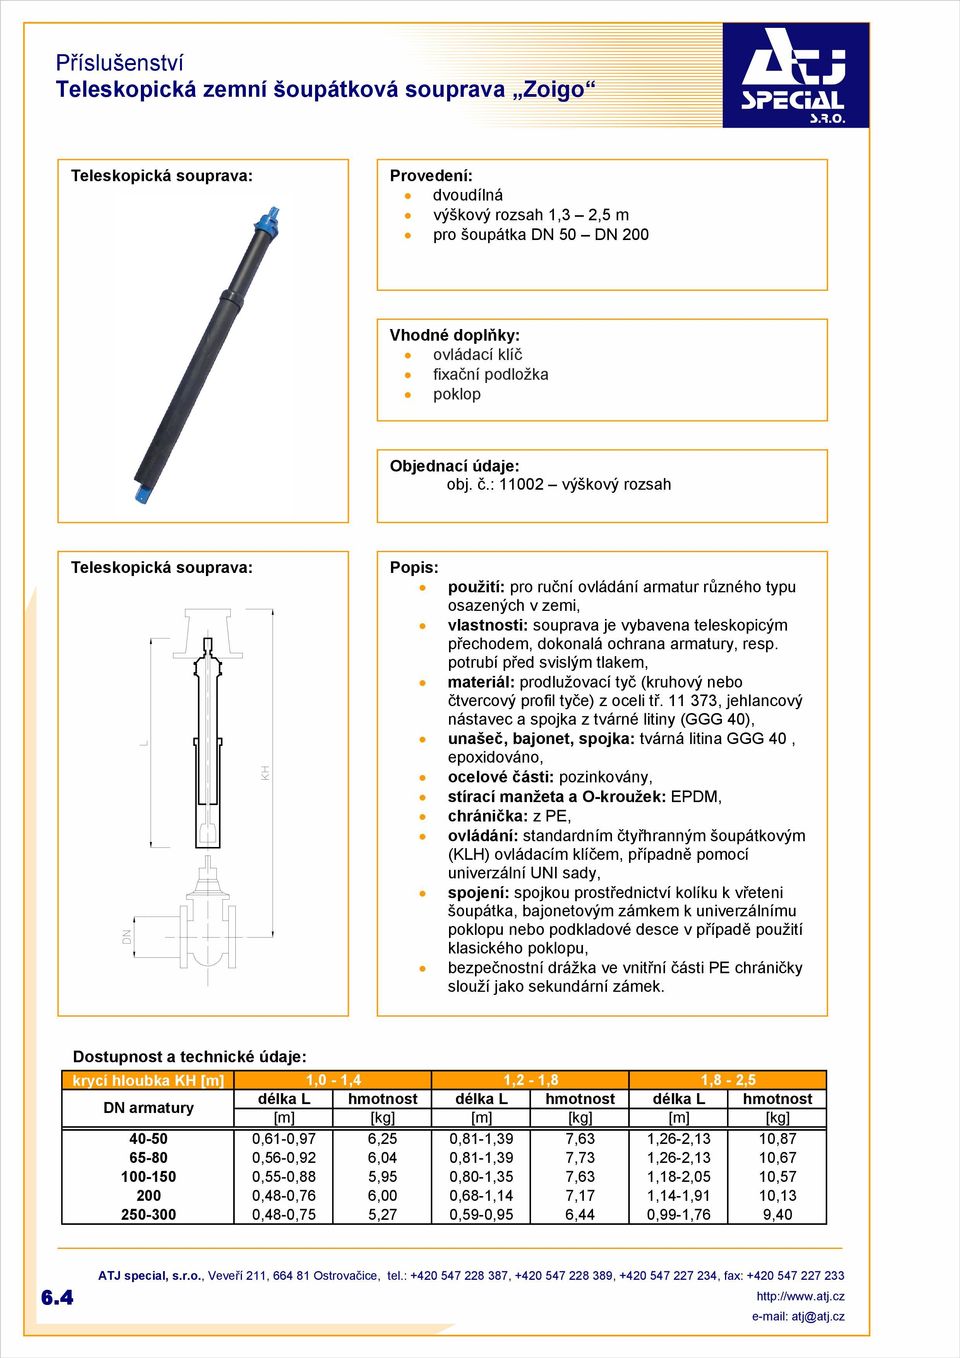 resp. potrubí před svislým tlakem, materiál: prodlužovací tyč (kruhový nebo čtvercový profil tyče) z oceli tř.